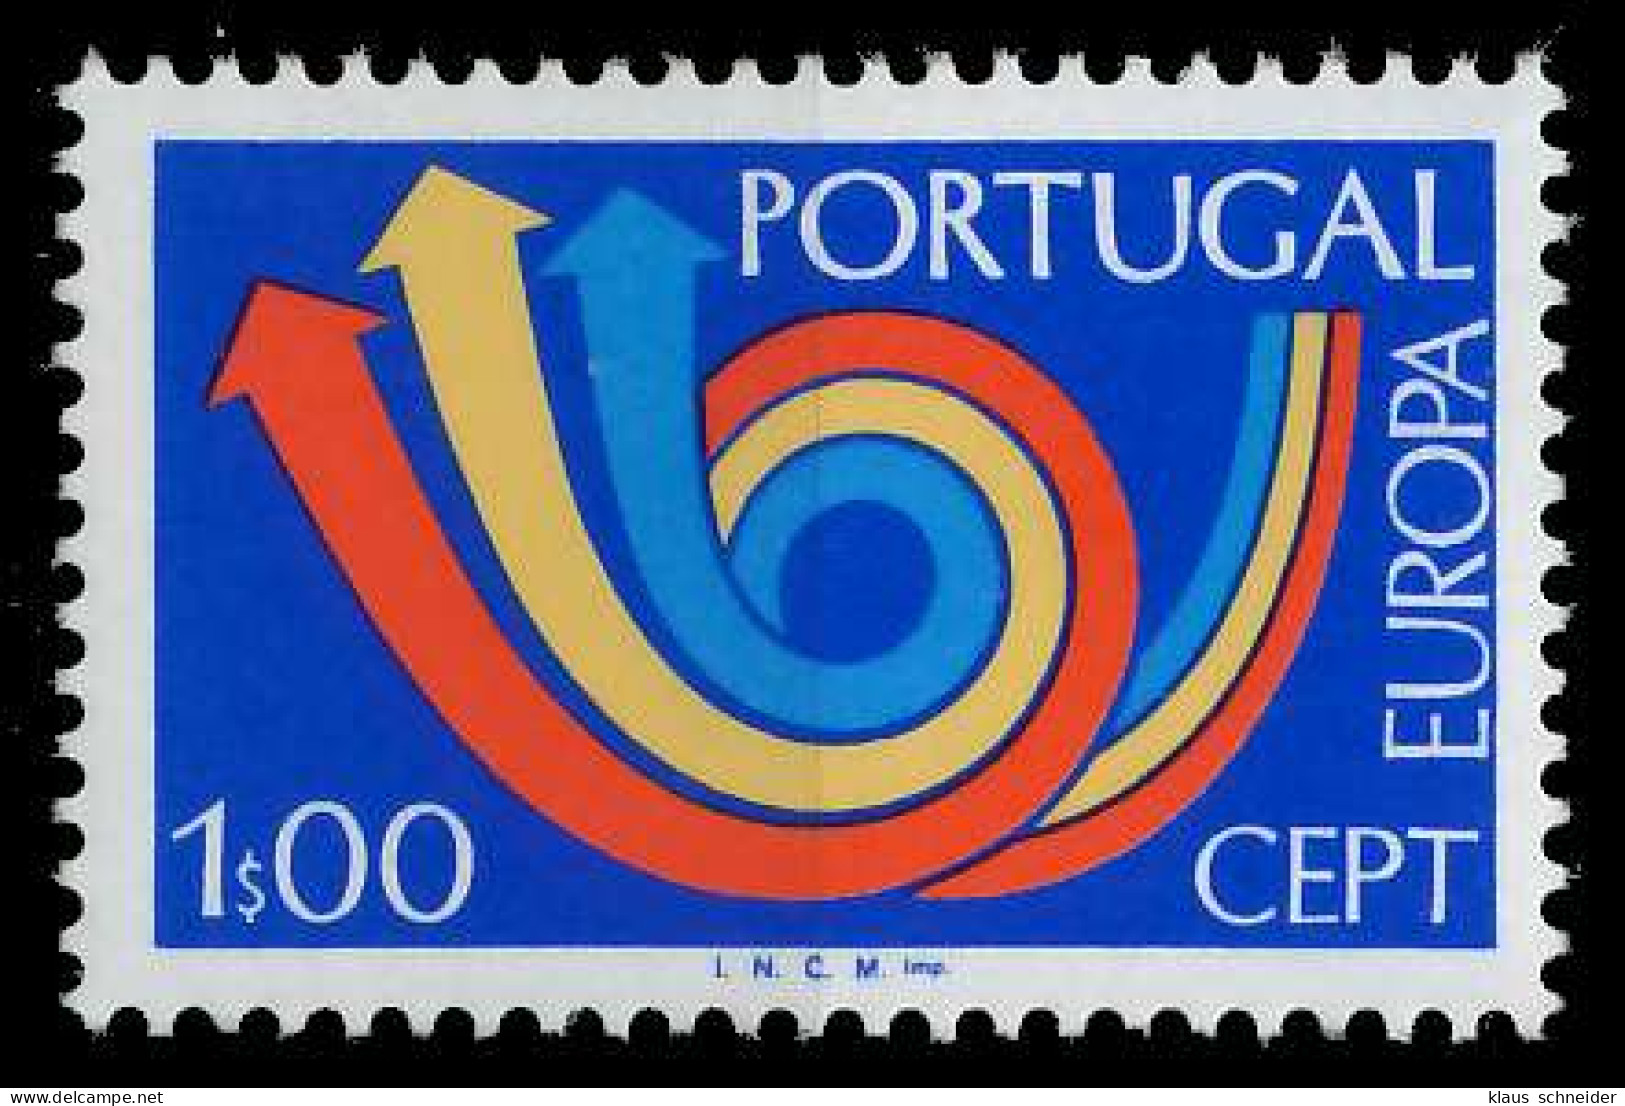 PORTUGAL 1973 Nr 1199 Postfrisch S7D9D9E - Ungebraucht